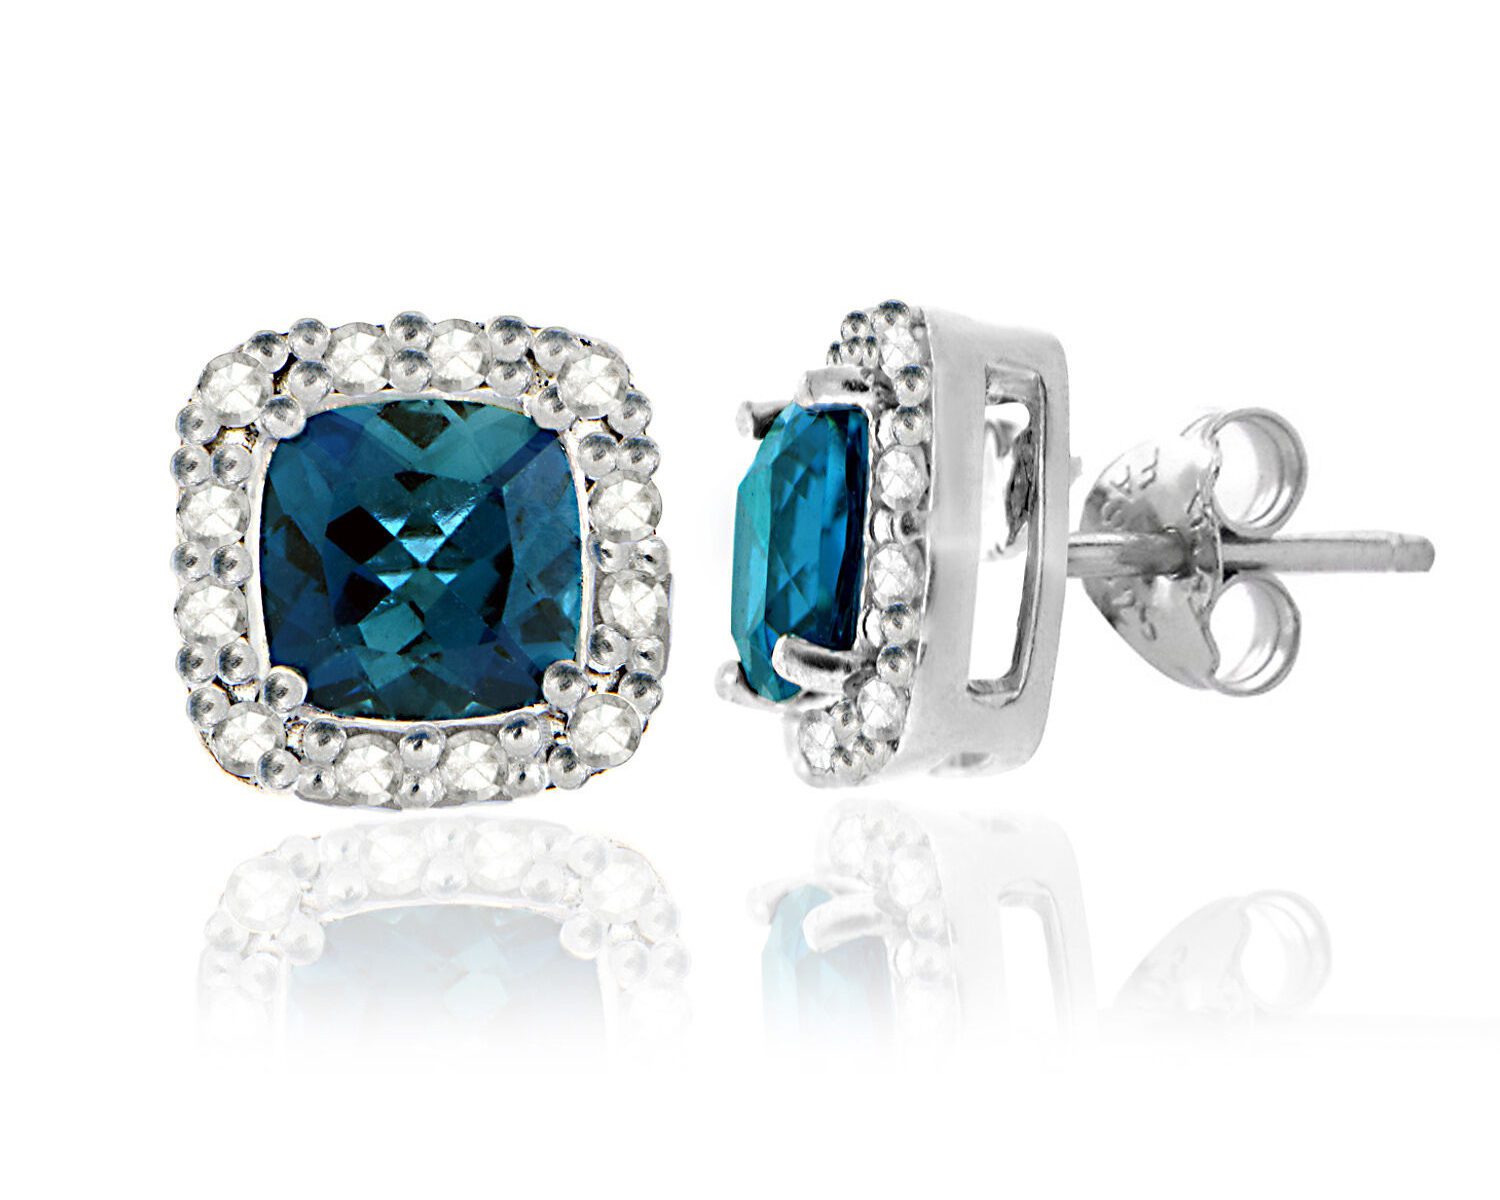 925 Silver 2.1ct London Blue Topaz & 1/8ct Diamond Stud Earrings